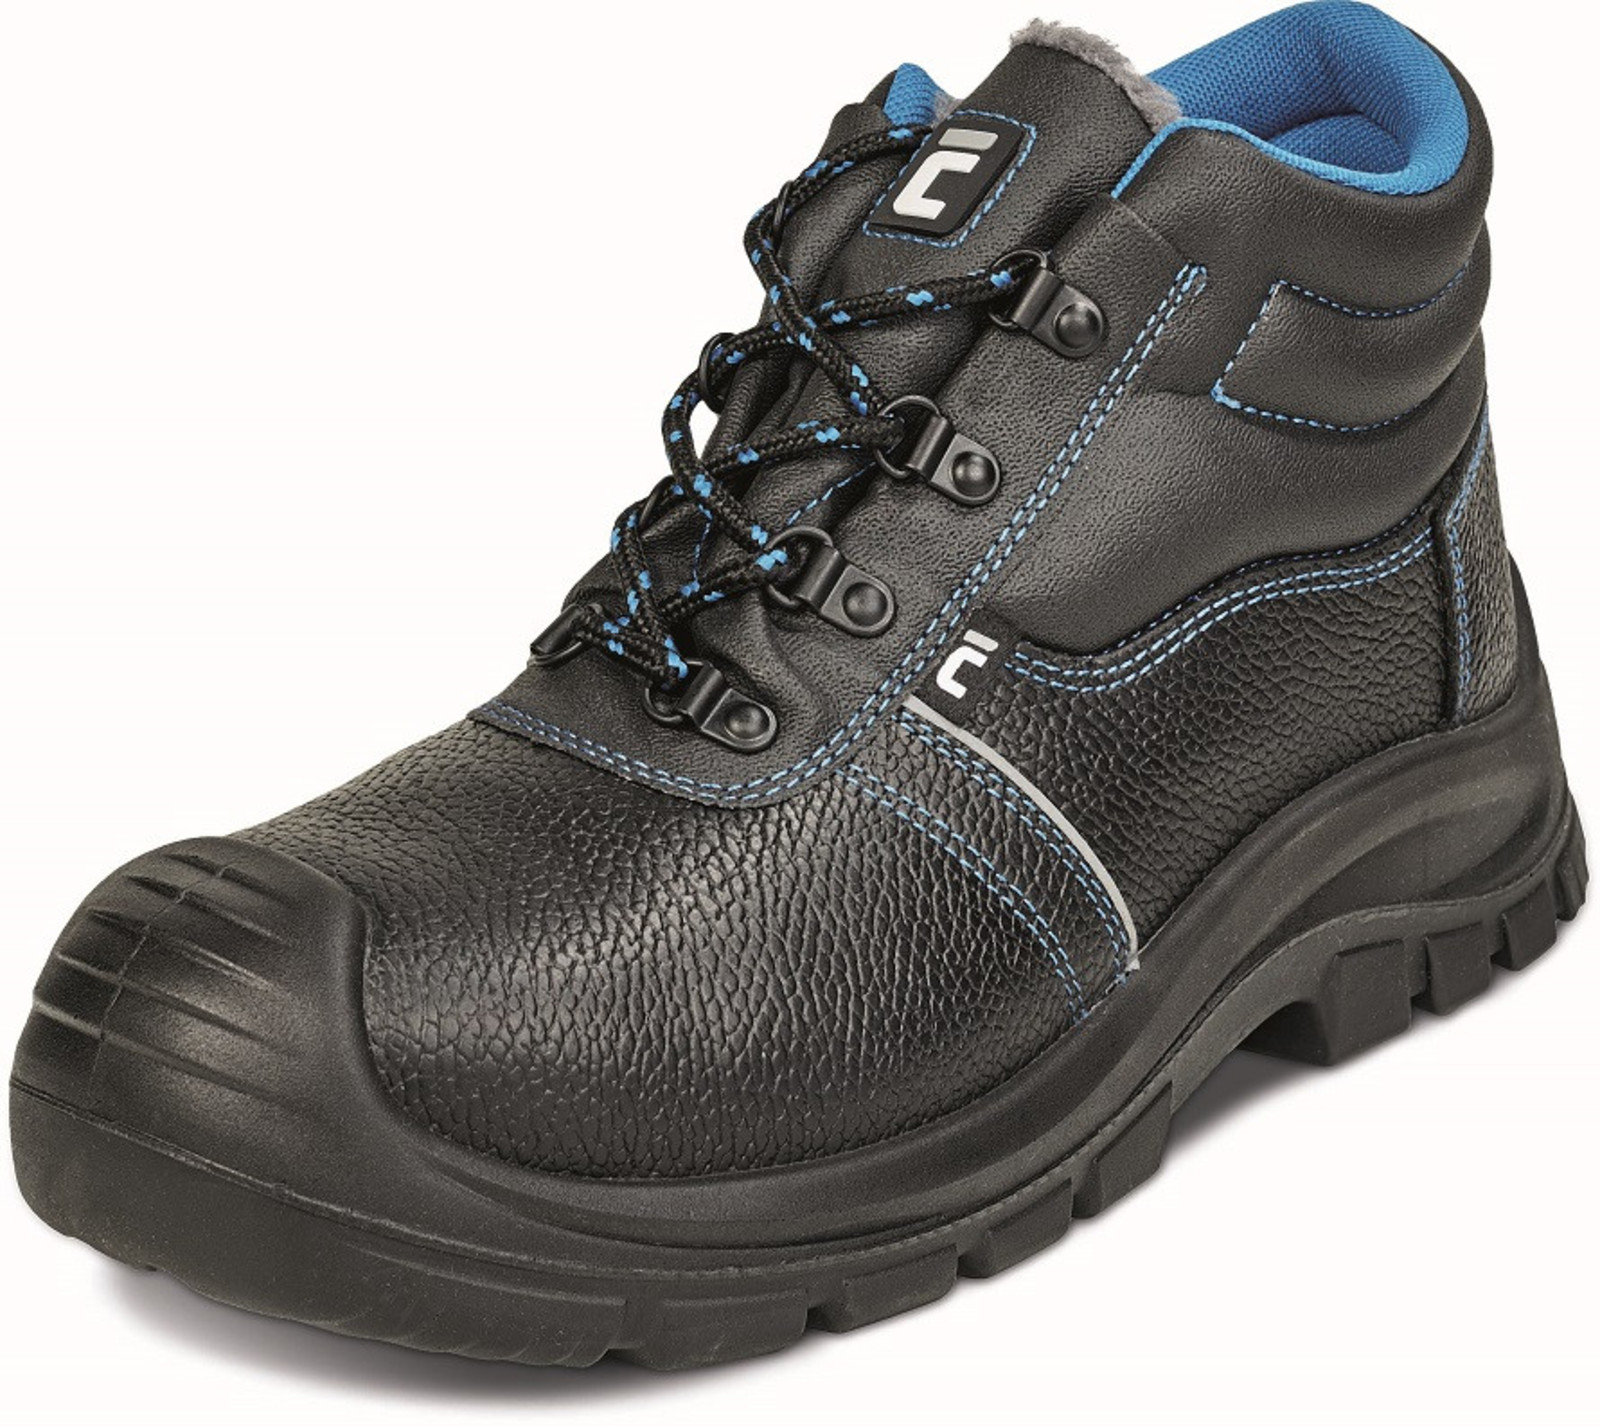 Zimná bezpečnostná obuv Raven XT S1 - veľkosť: 48, farba: čierna